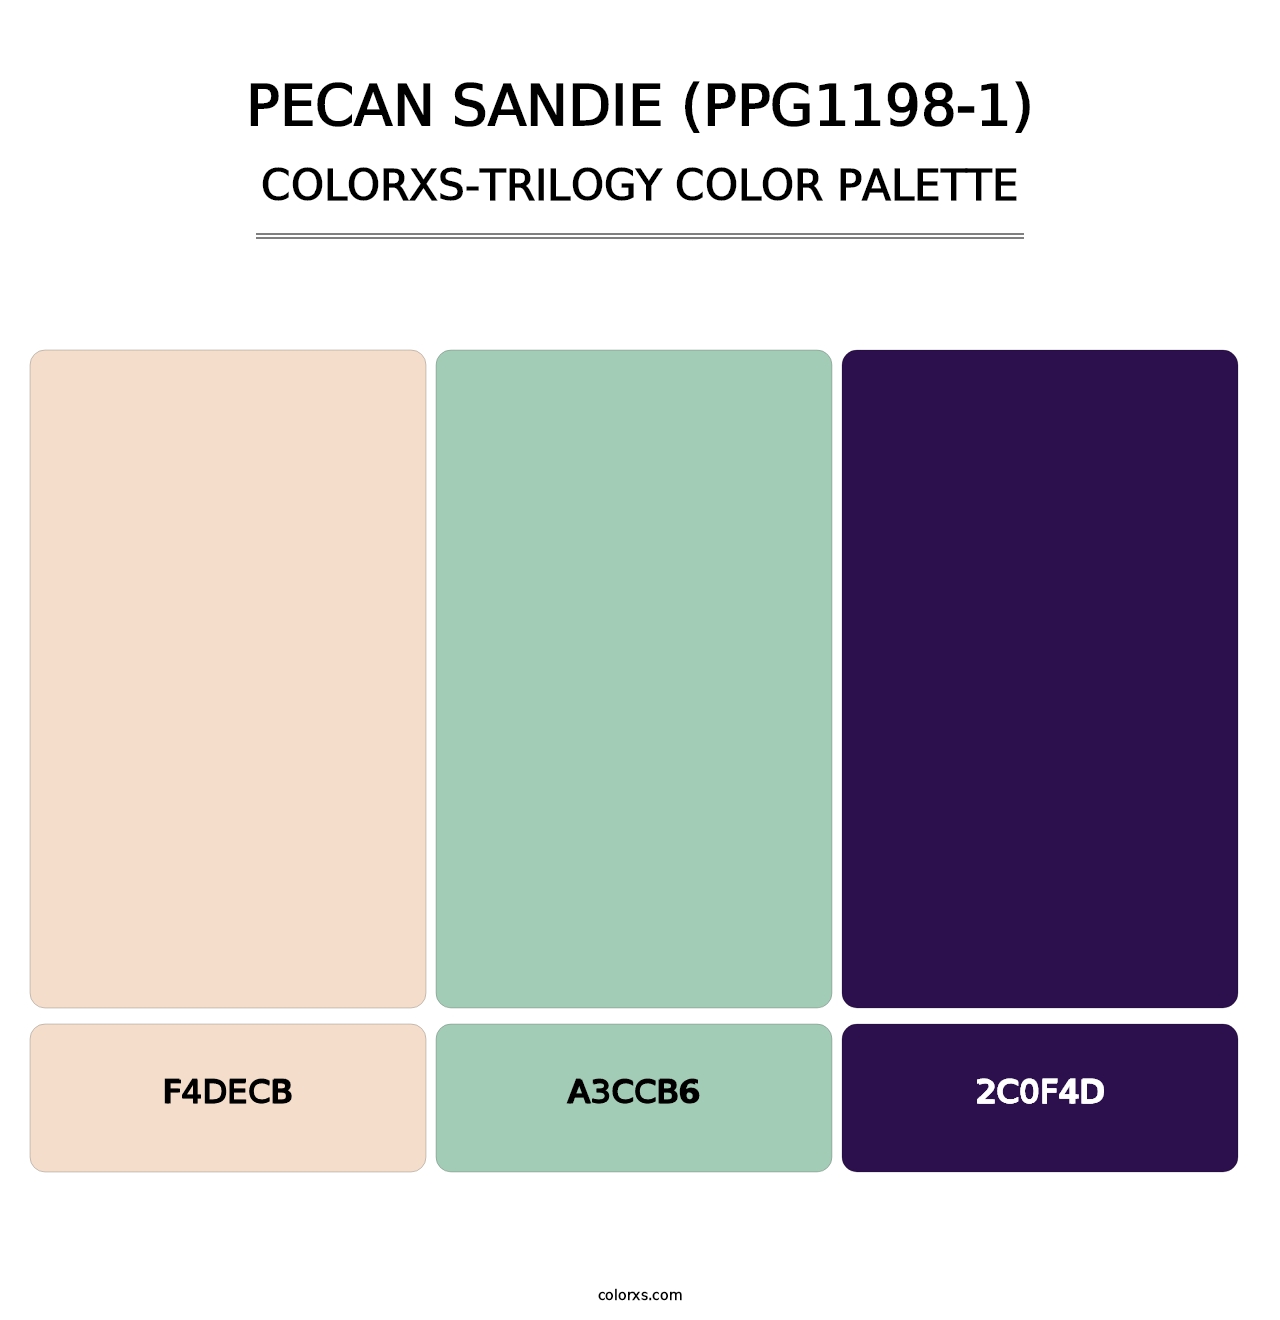 Pecan Sandie (PPG1198-1) - Colorxs Trilogy Palette